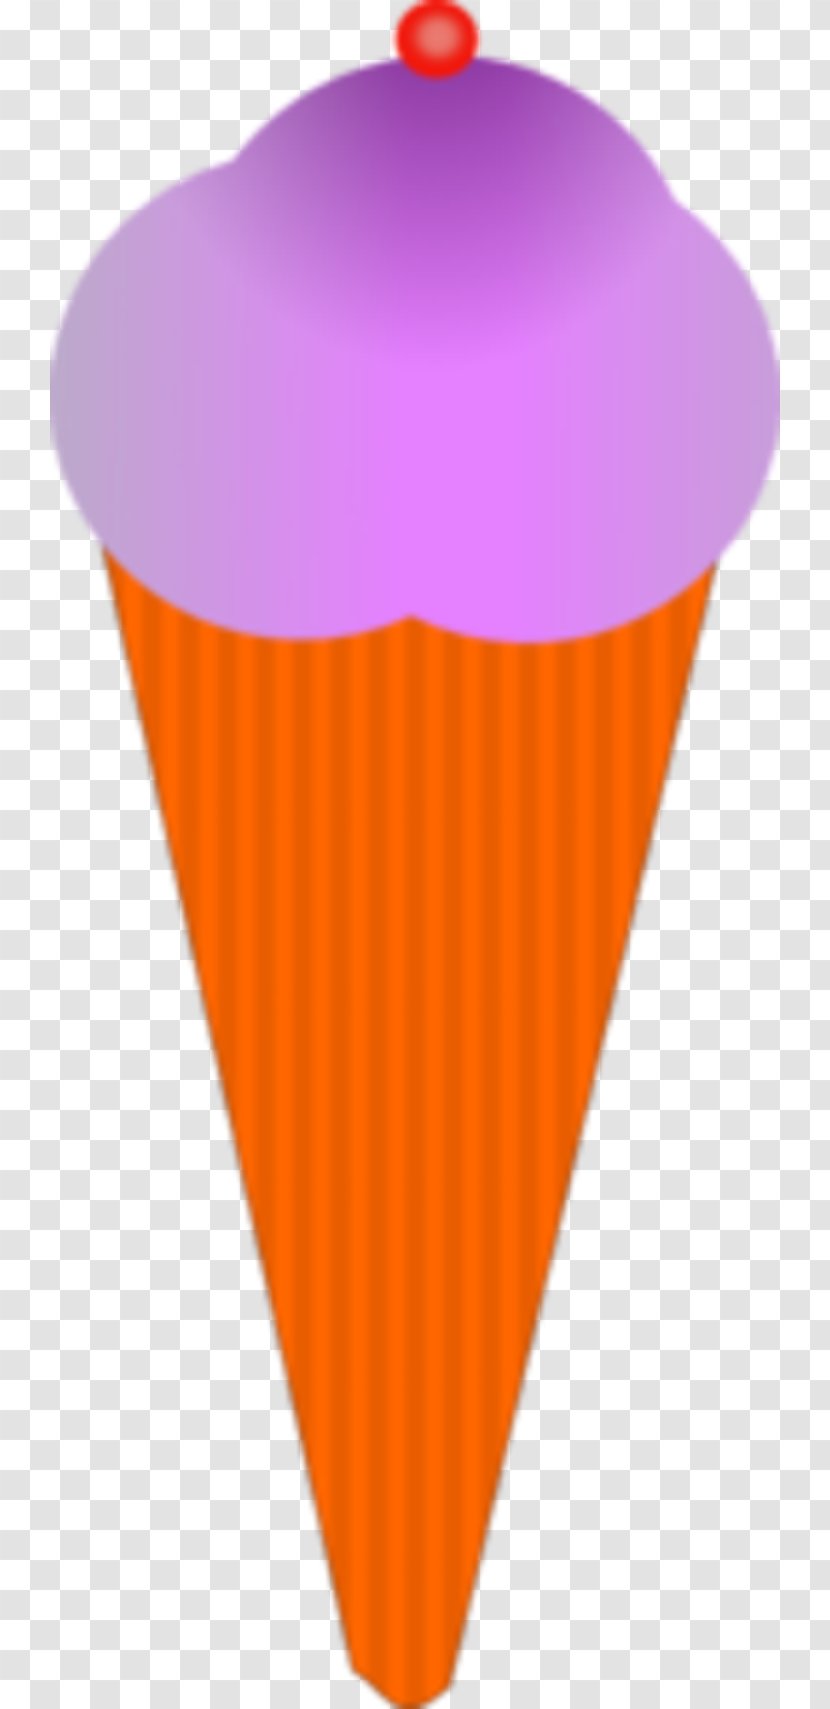 Ice Cream Cones Chocolate Snow Cone Sundae - Vanilla - Four-ball Transparent PNG